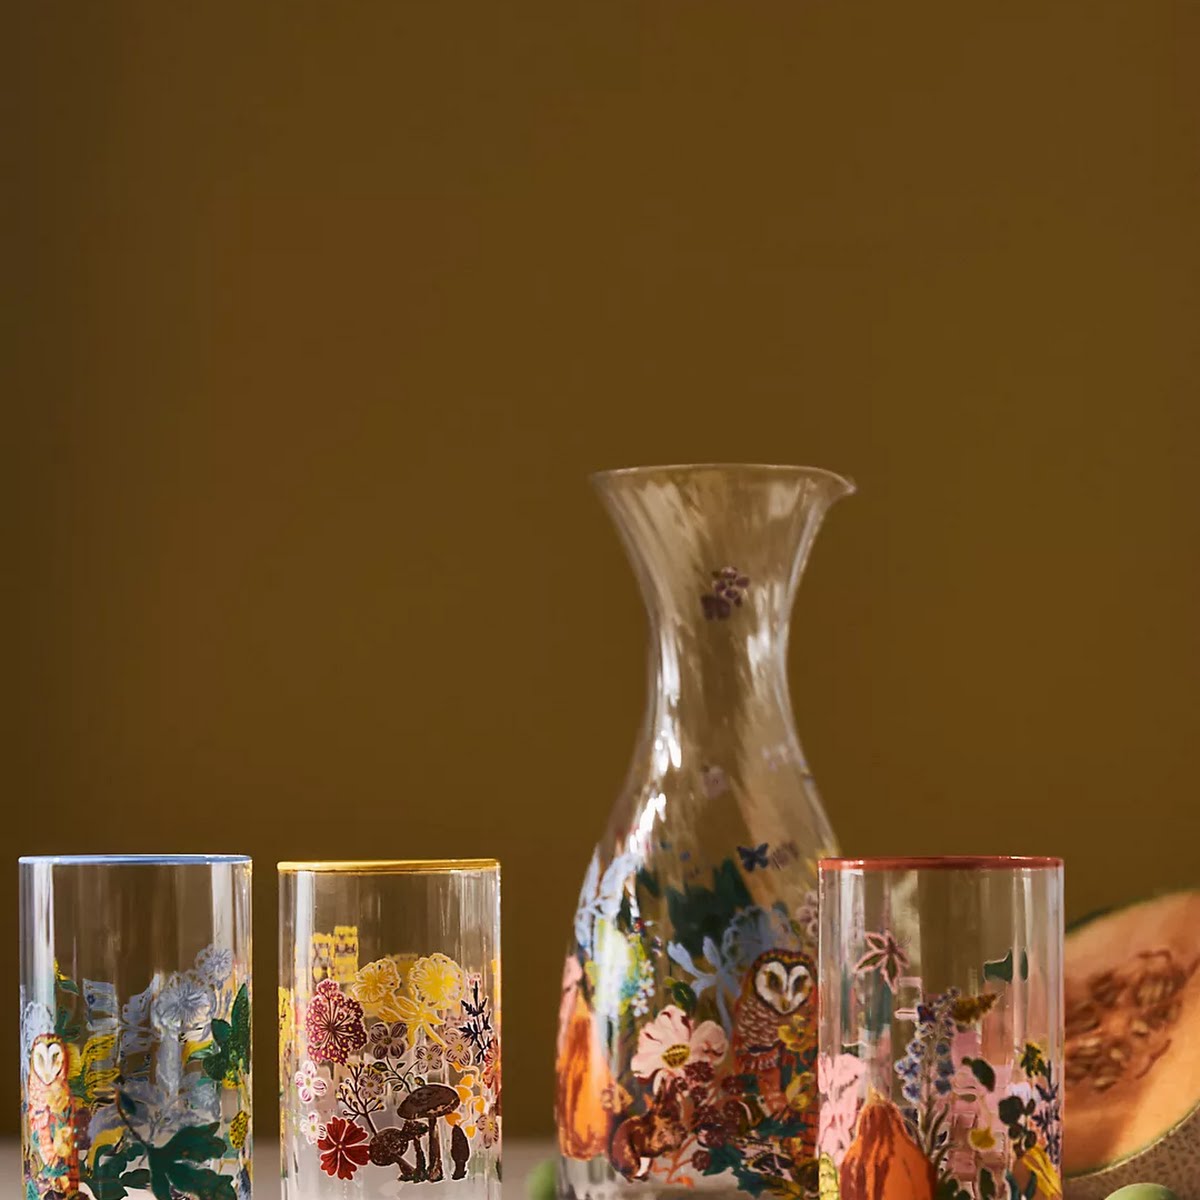 Nathalie Lete for Anthropologie, Floral Glass Carafe, €45